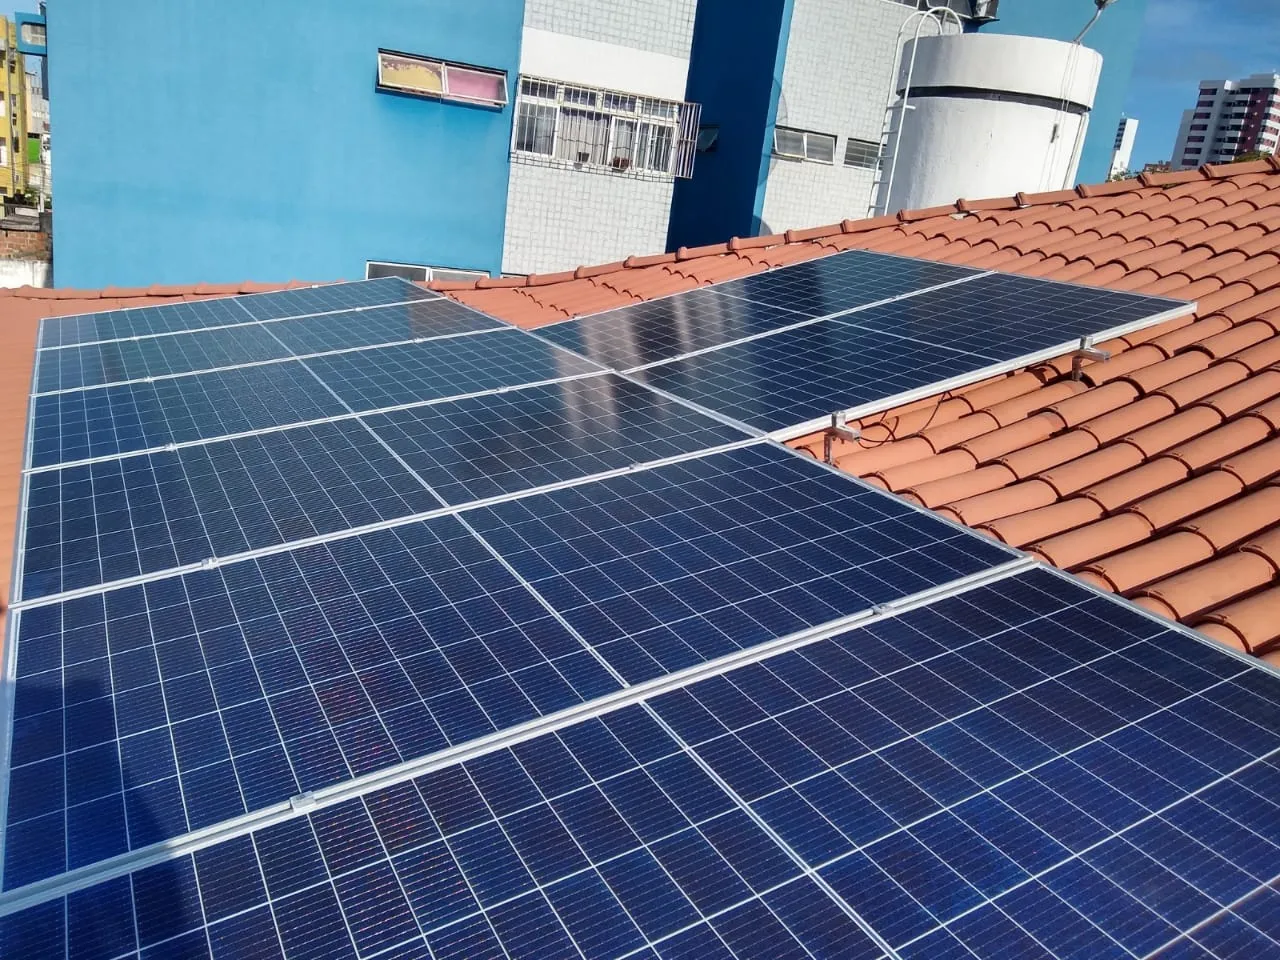 Sistema instalado no município de Jaboatão dos Guararapes-PE. Composto por 18 módulos Solar Fotovoltaico de potência 410W e 05 Micro inversores. Com plataforma para monitoramento Online nível módulo a módulo.